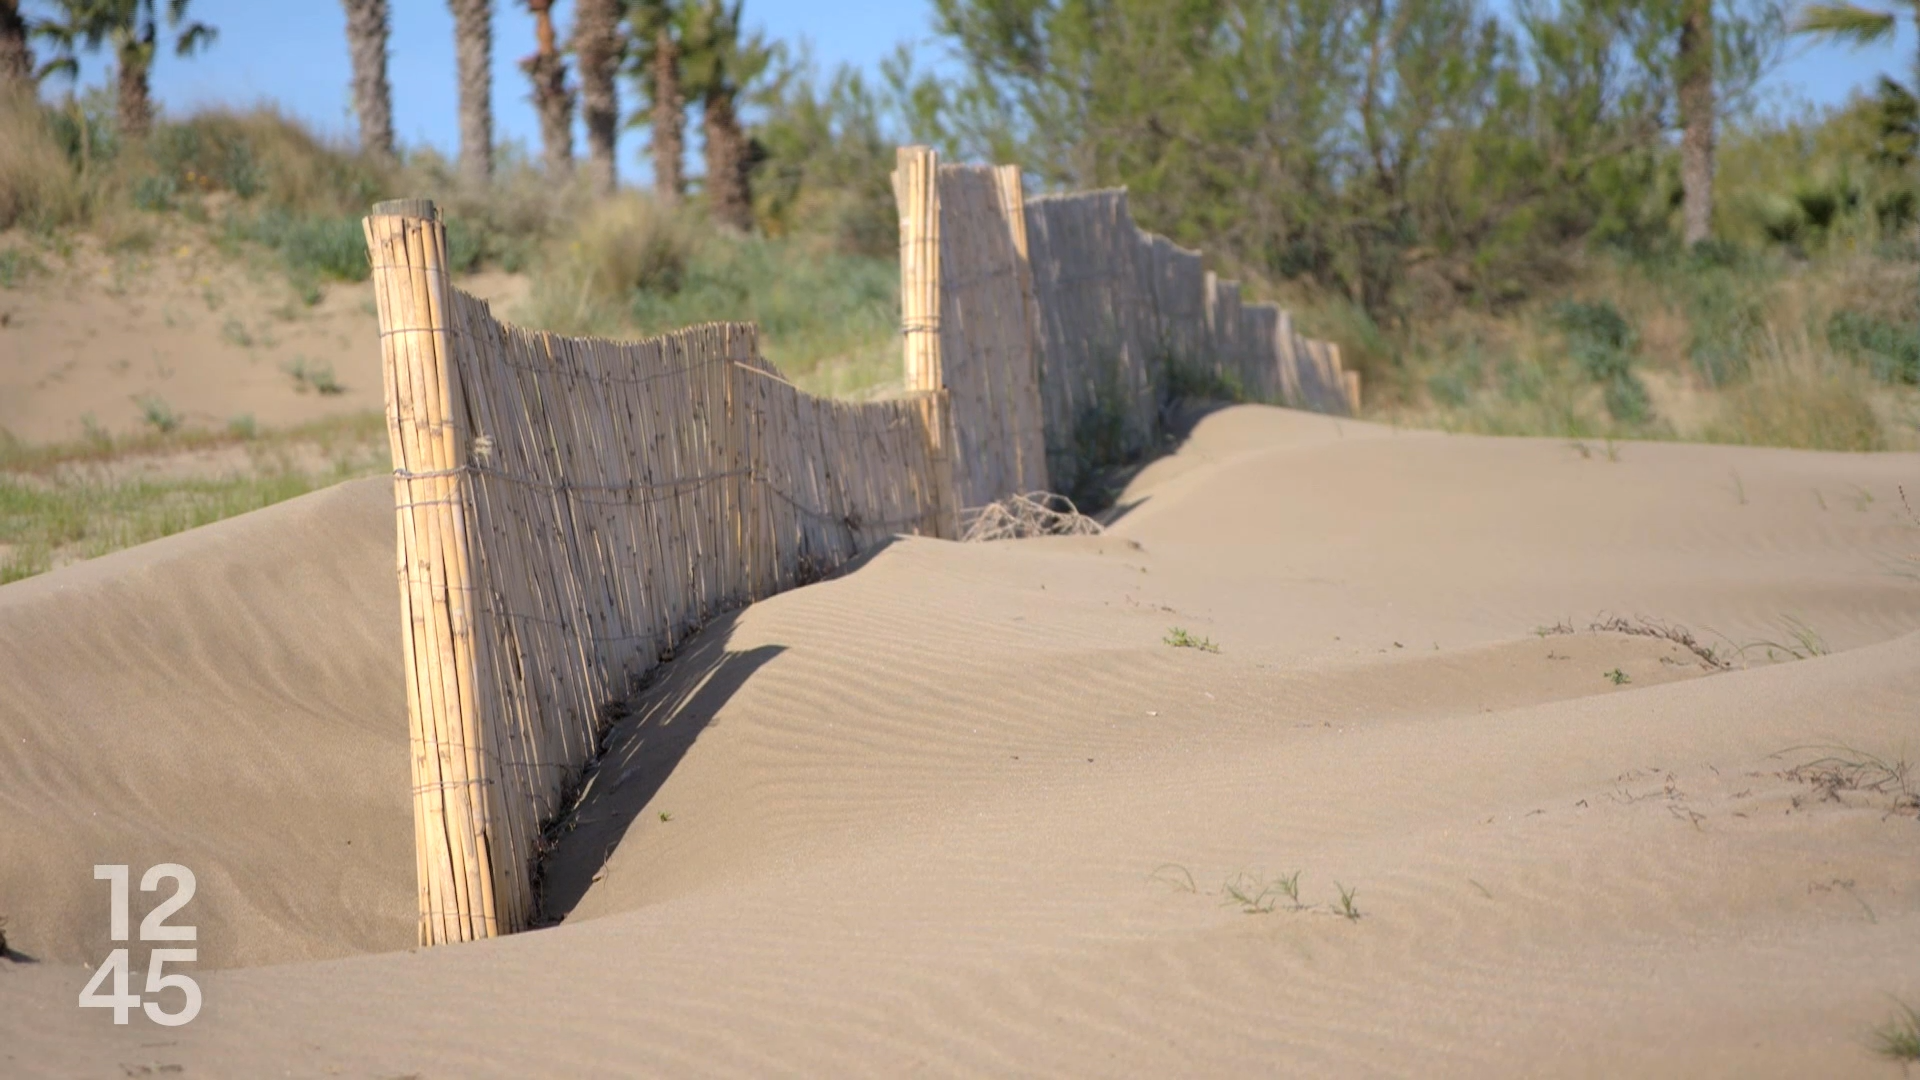 Des barrières ont été installées pour réduire l'envolée du sable avec le vent. [12h45]